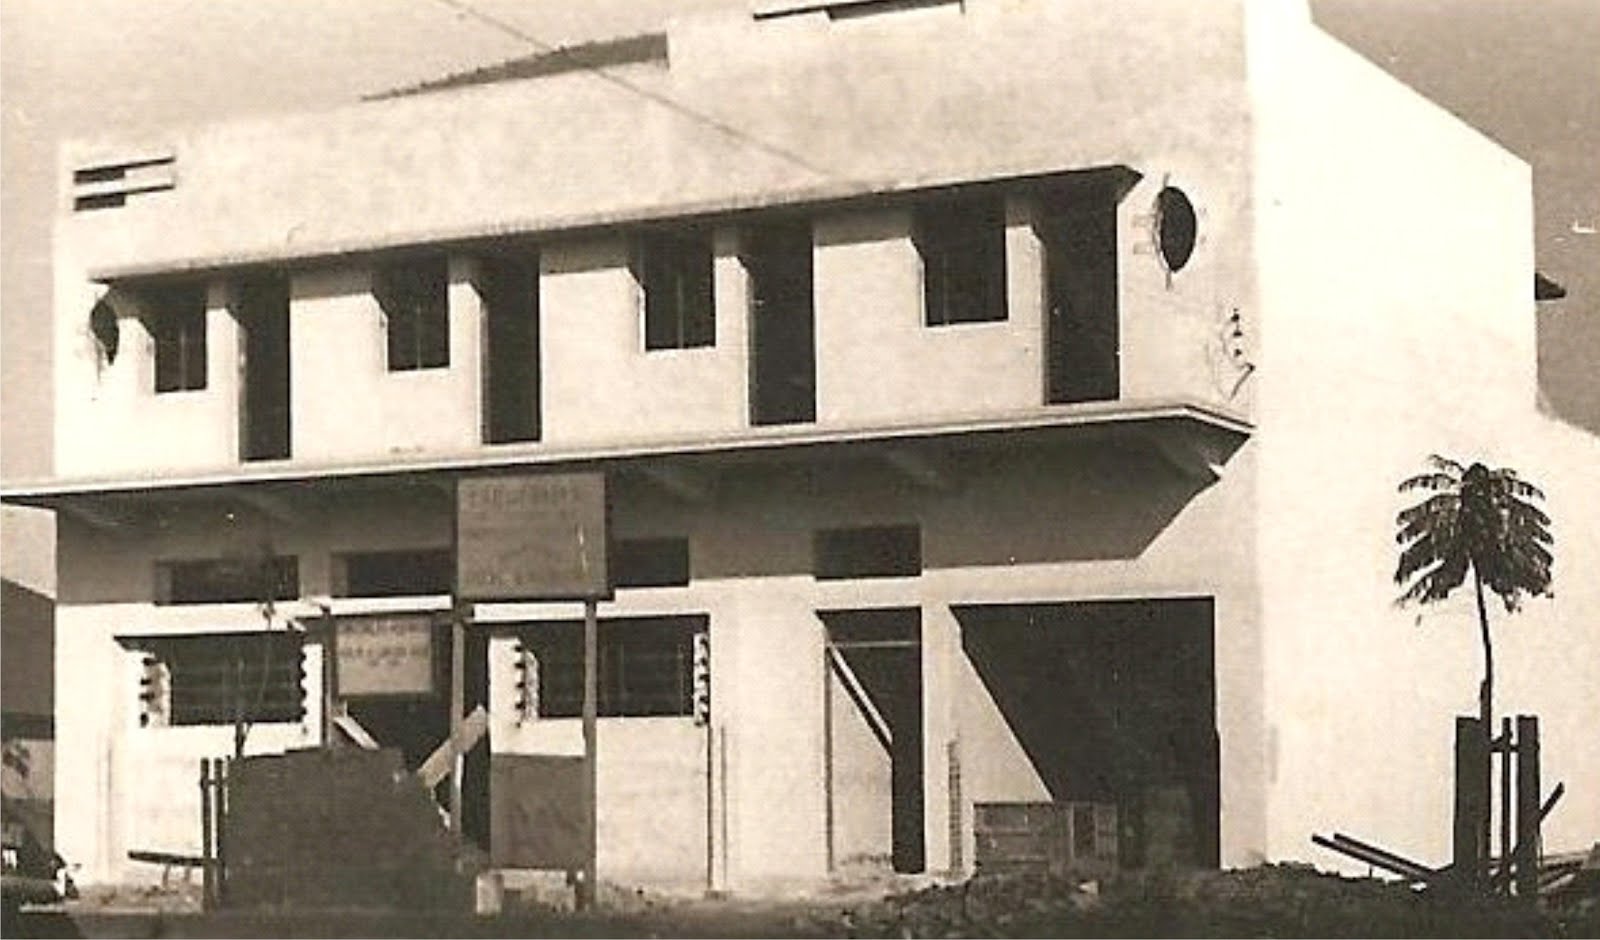 Construtora Cruzeiro do Sul - Década de 1950